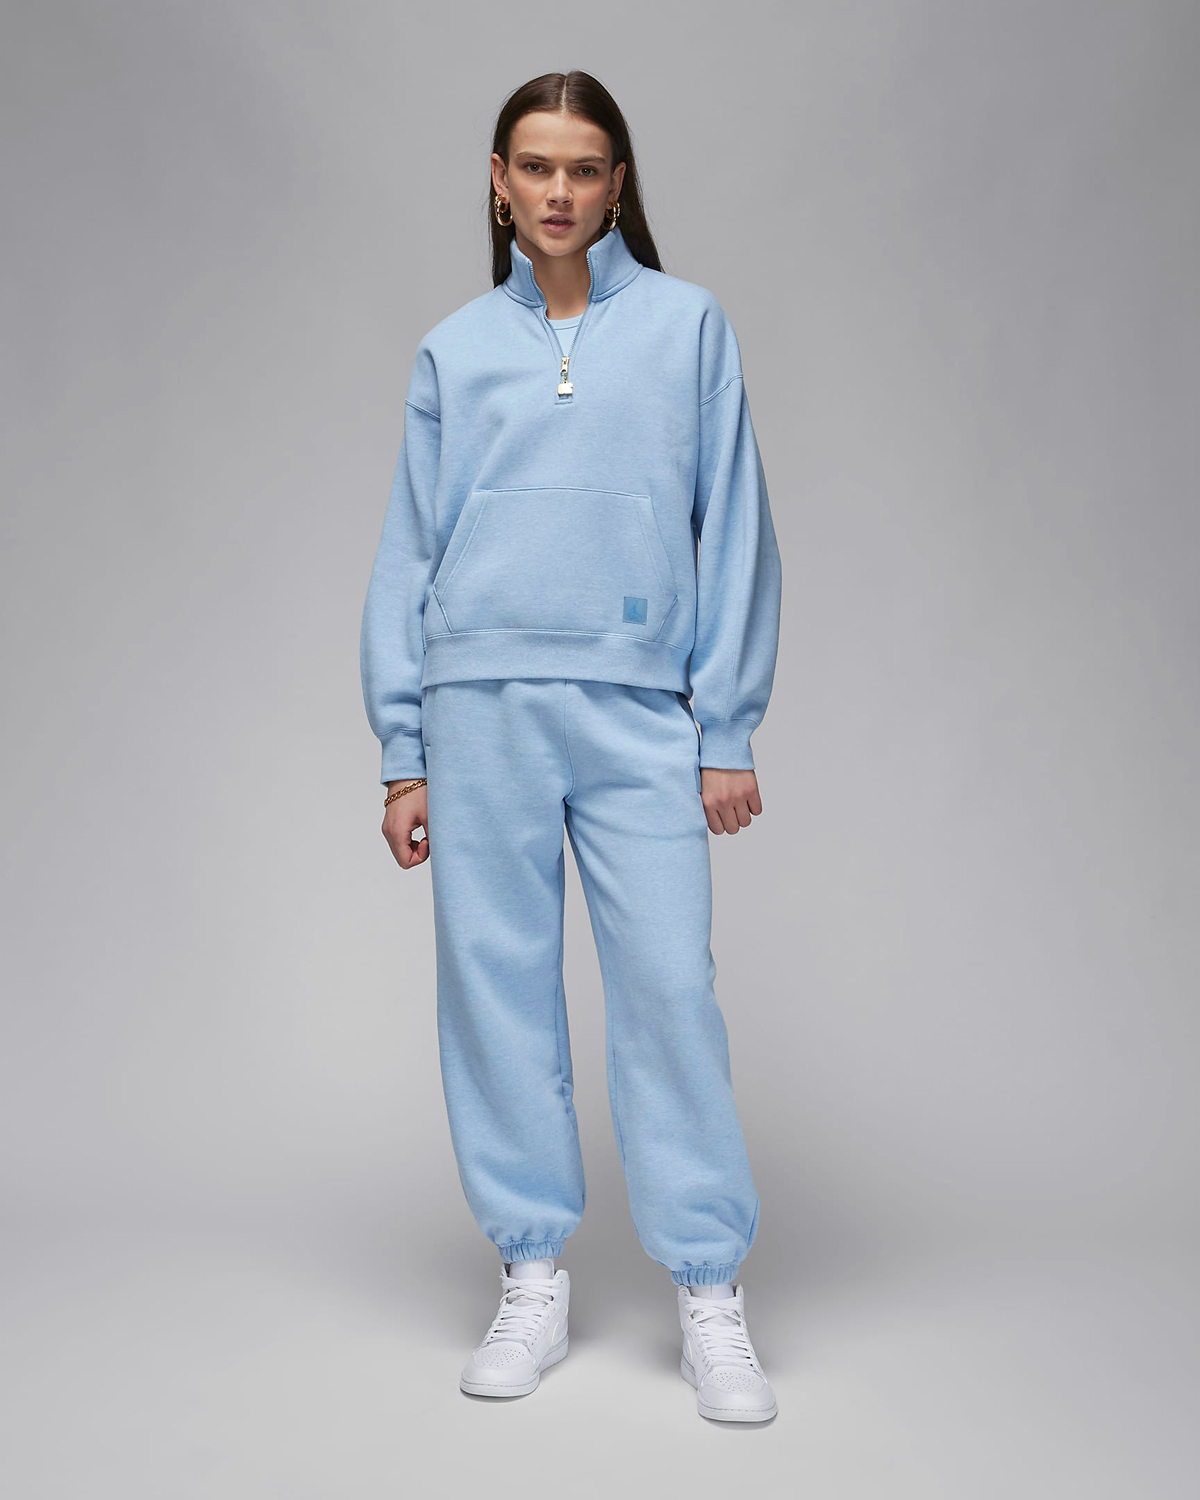 Jordan-Flight-Fleece-Womens-Zip-Top-Pants-Blue-Grey